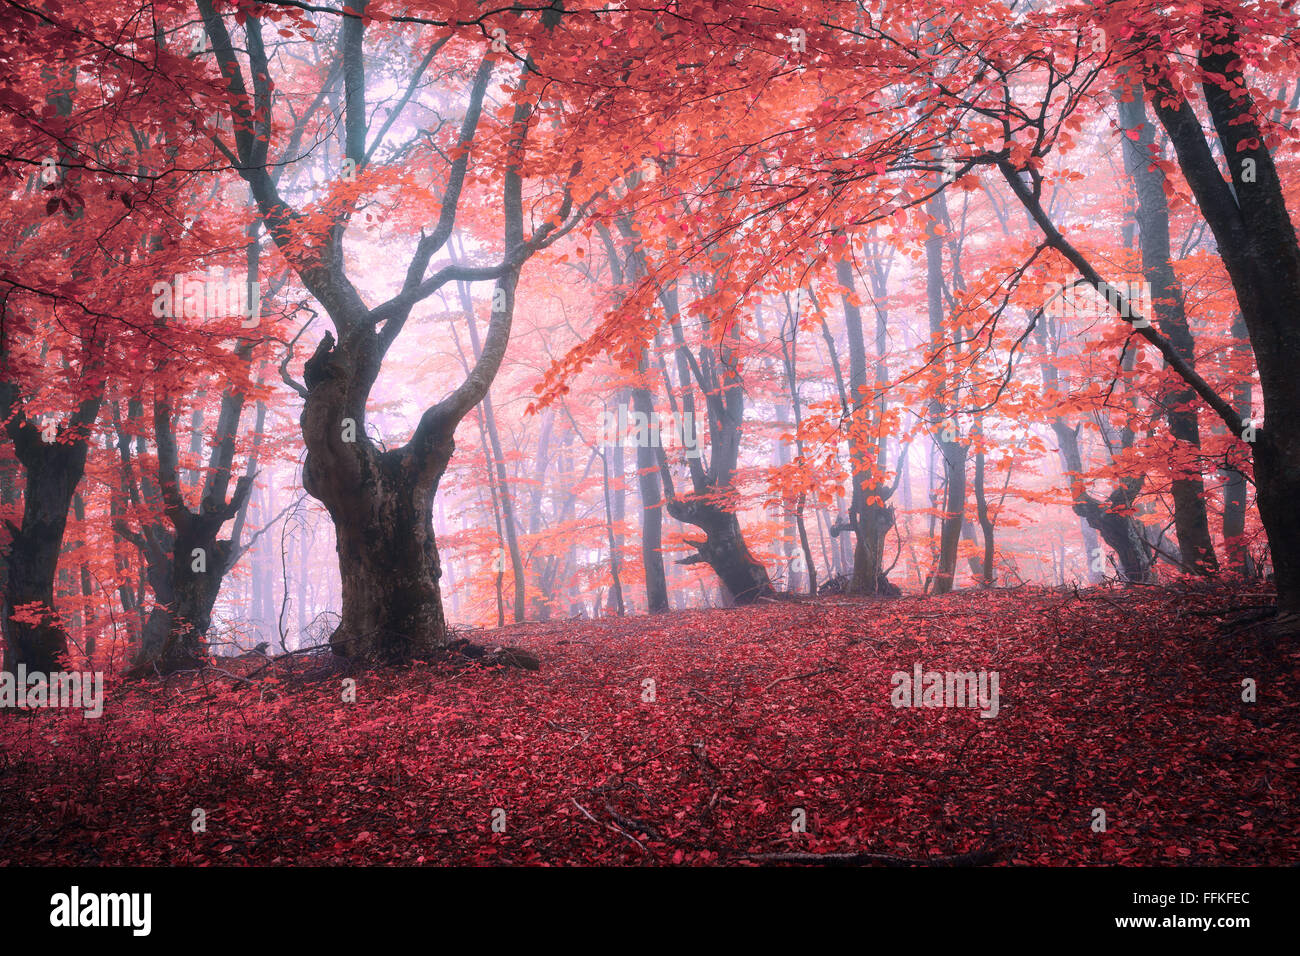 Bella la magia della foresta rossa nella nebbia in autunno. Paesaggio da fiaba. Foto Stock